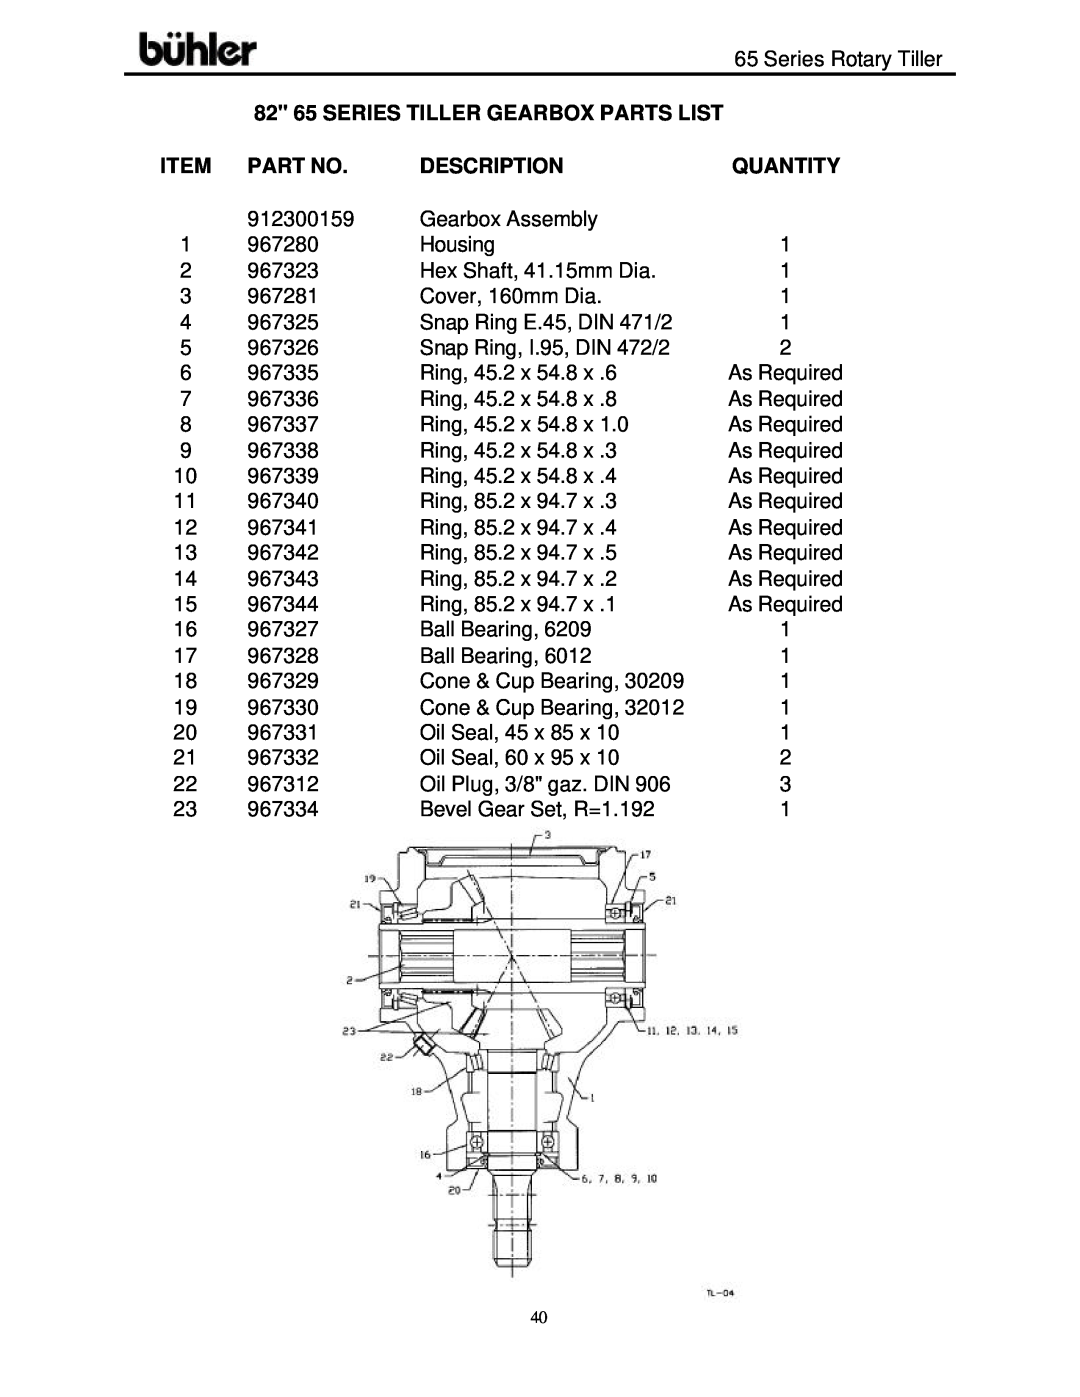 Buhler FK302 warranty 82 65 SERIES TILLER GEARBOX PARTS LIST, Description, Quantity 